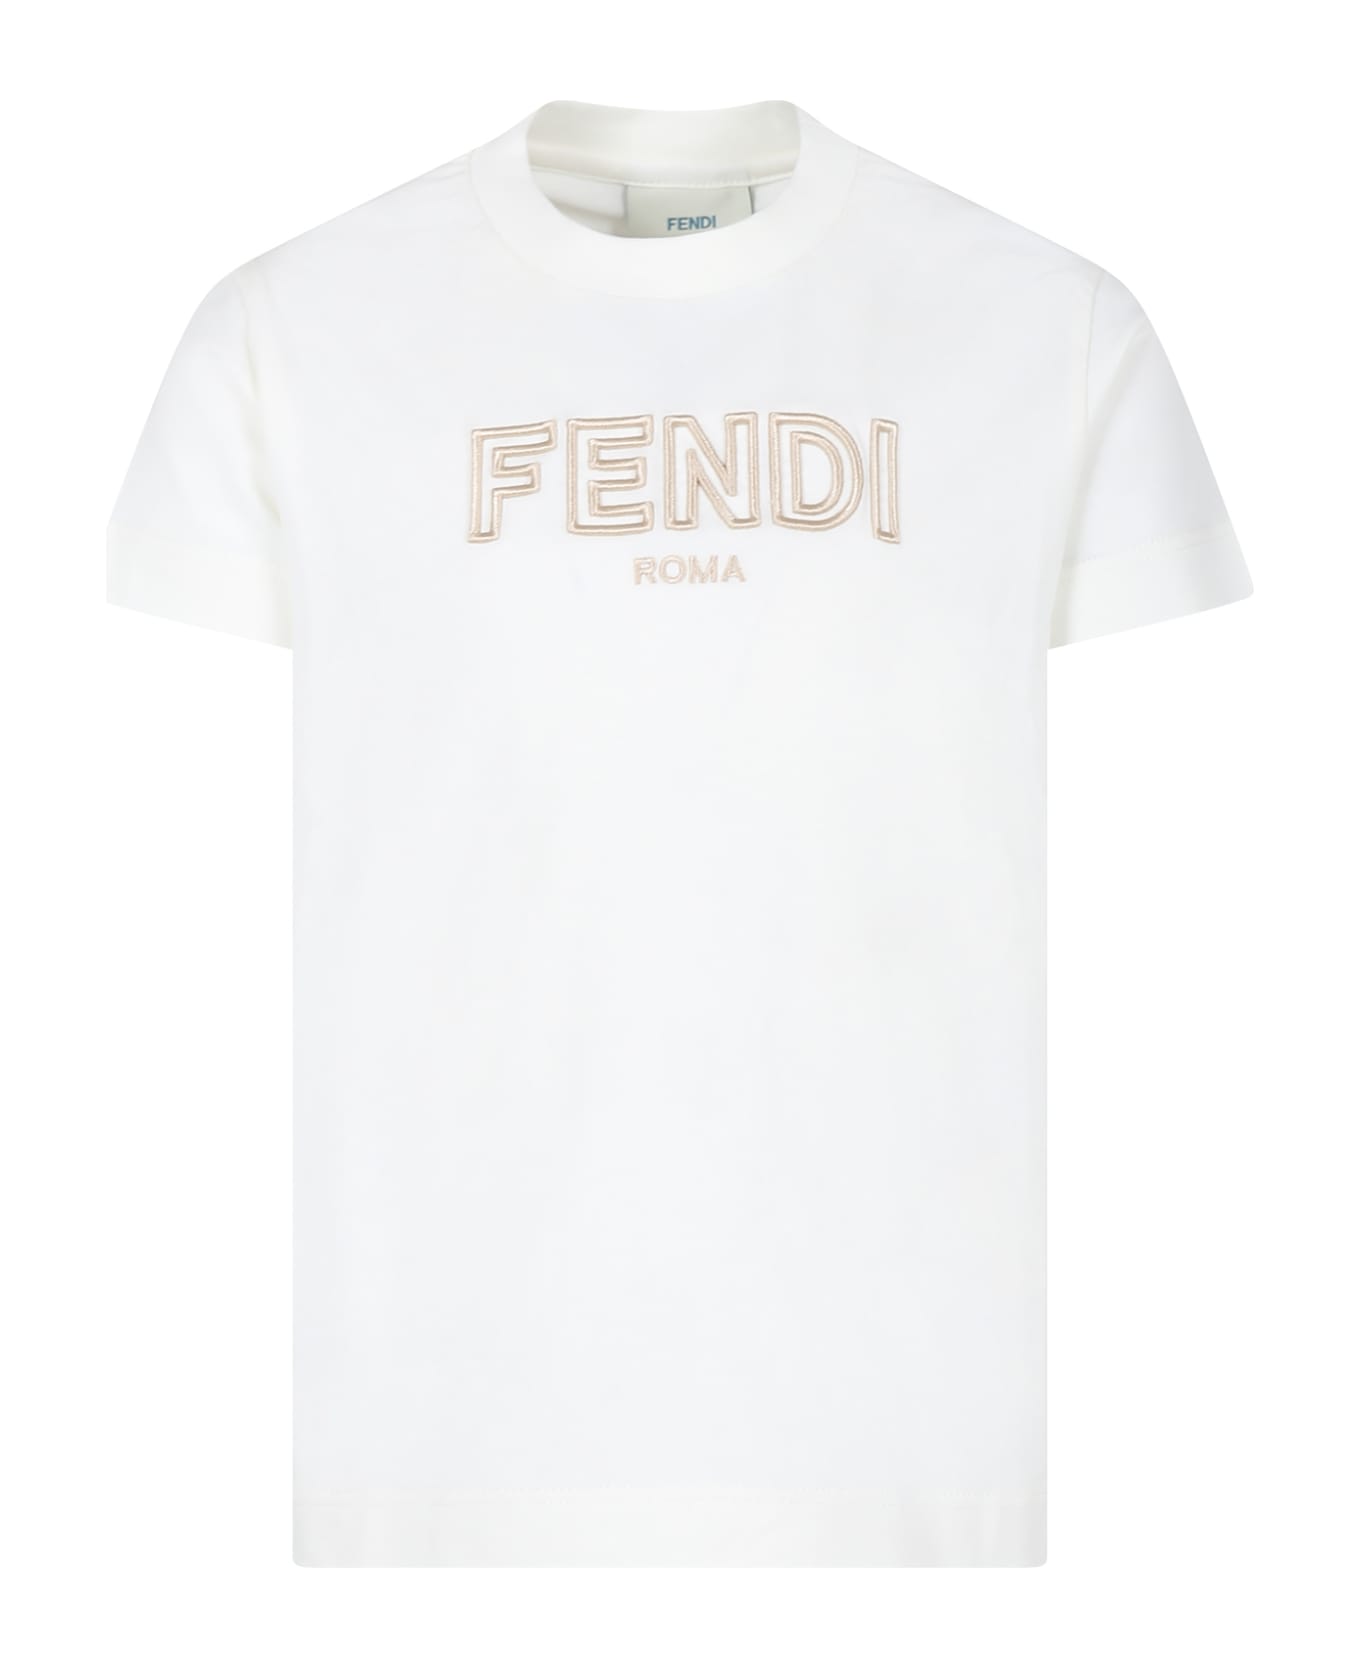 Fendi White T-shirt For Kids With Fendi Logo - White